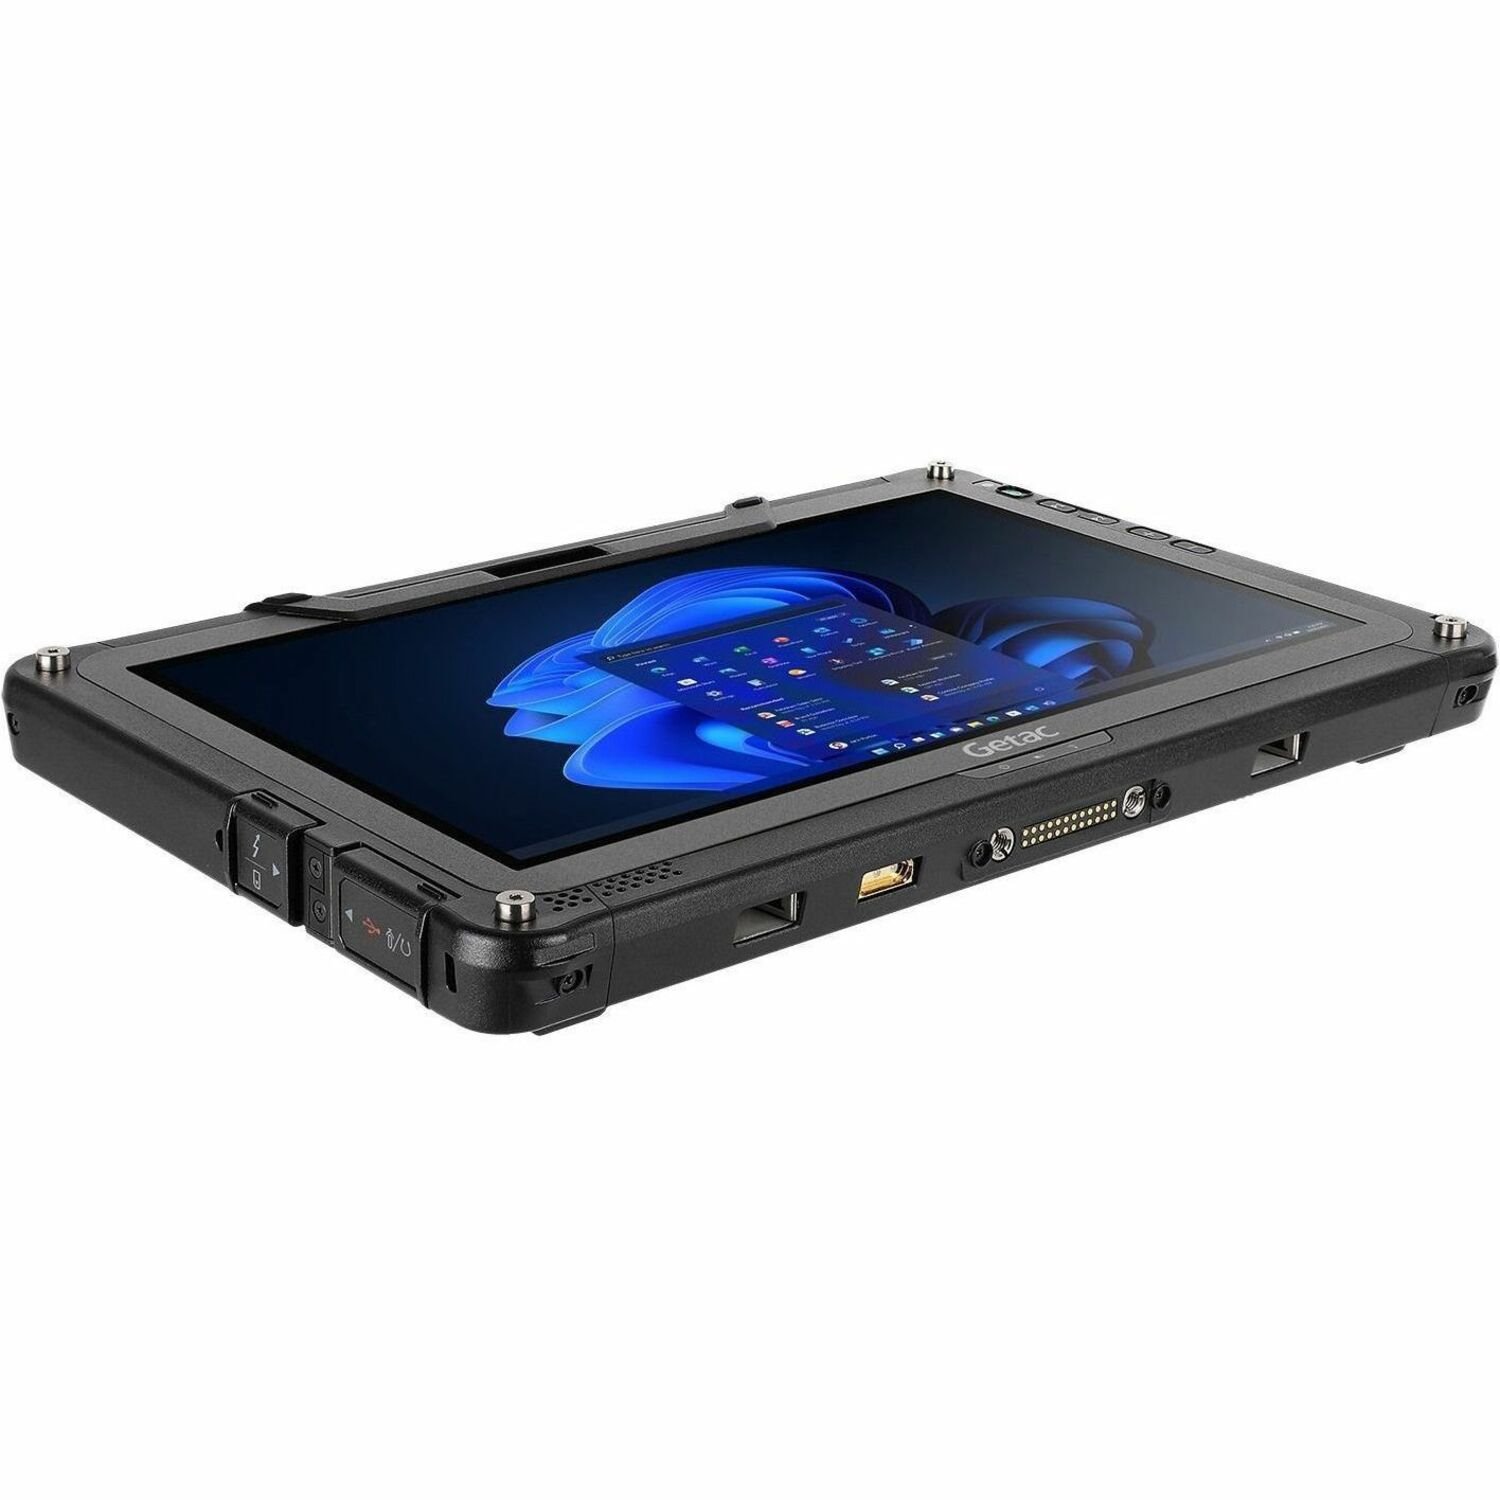 Getac F110 F110G6 Rugged Tablet - 11.6" Full HD - 16 GB - 256 GB SSD - Windows 10 Pro 64-bit - TAA Compliant